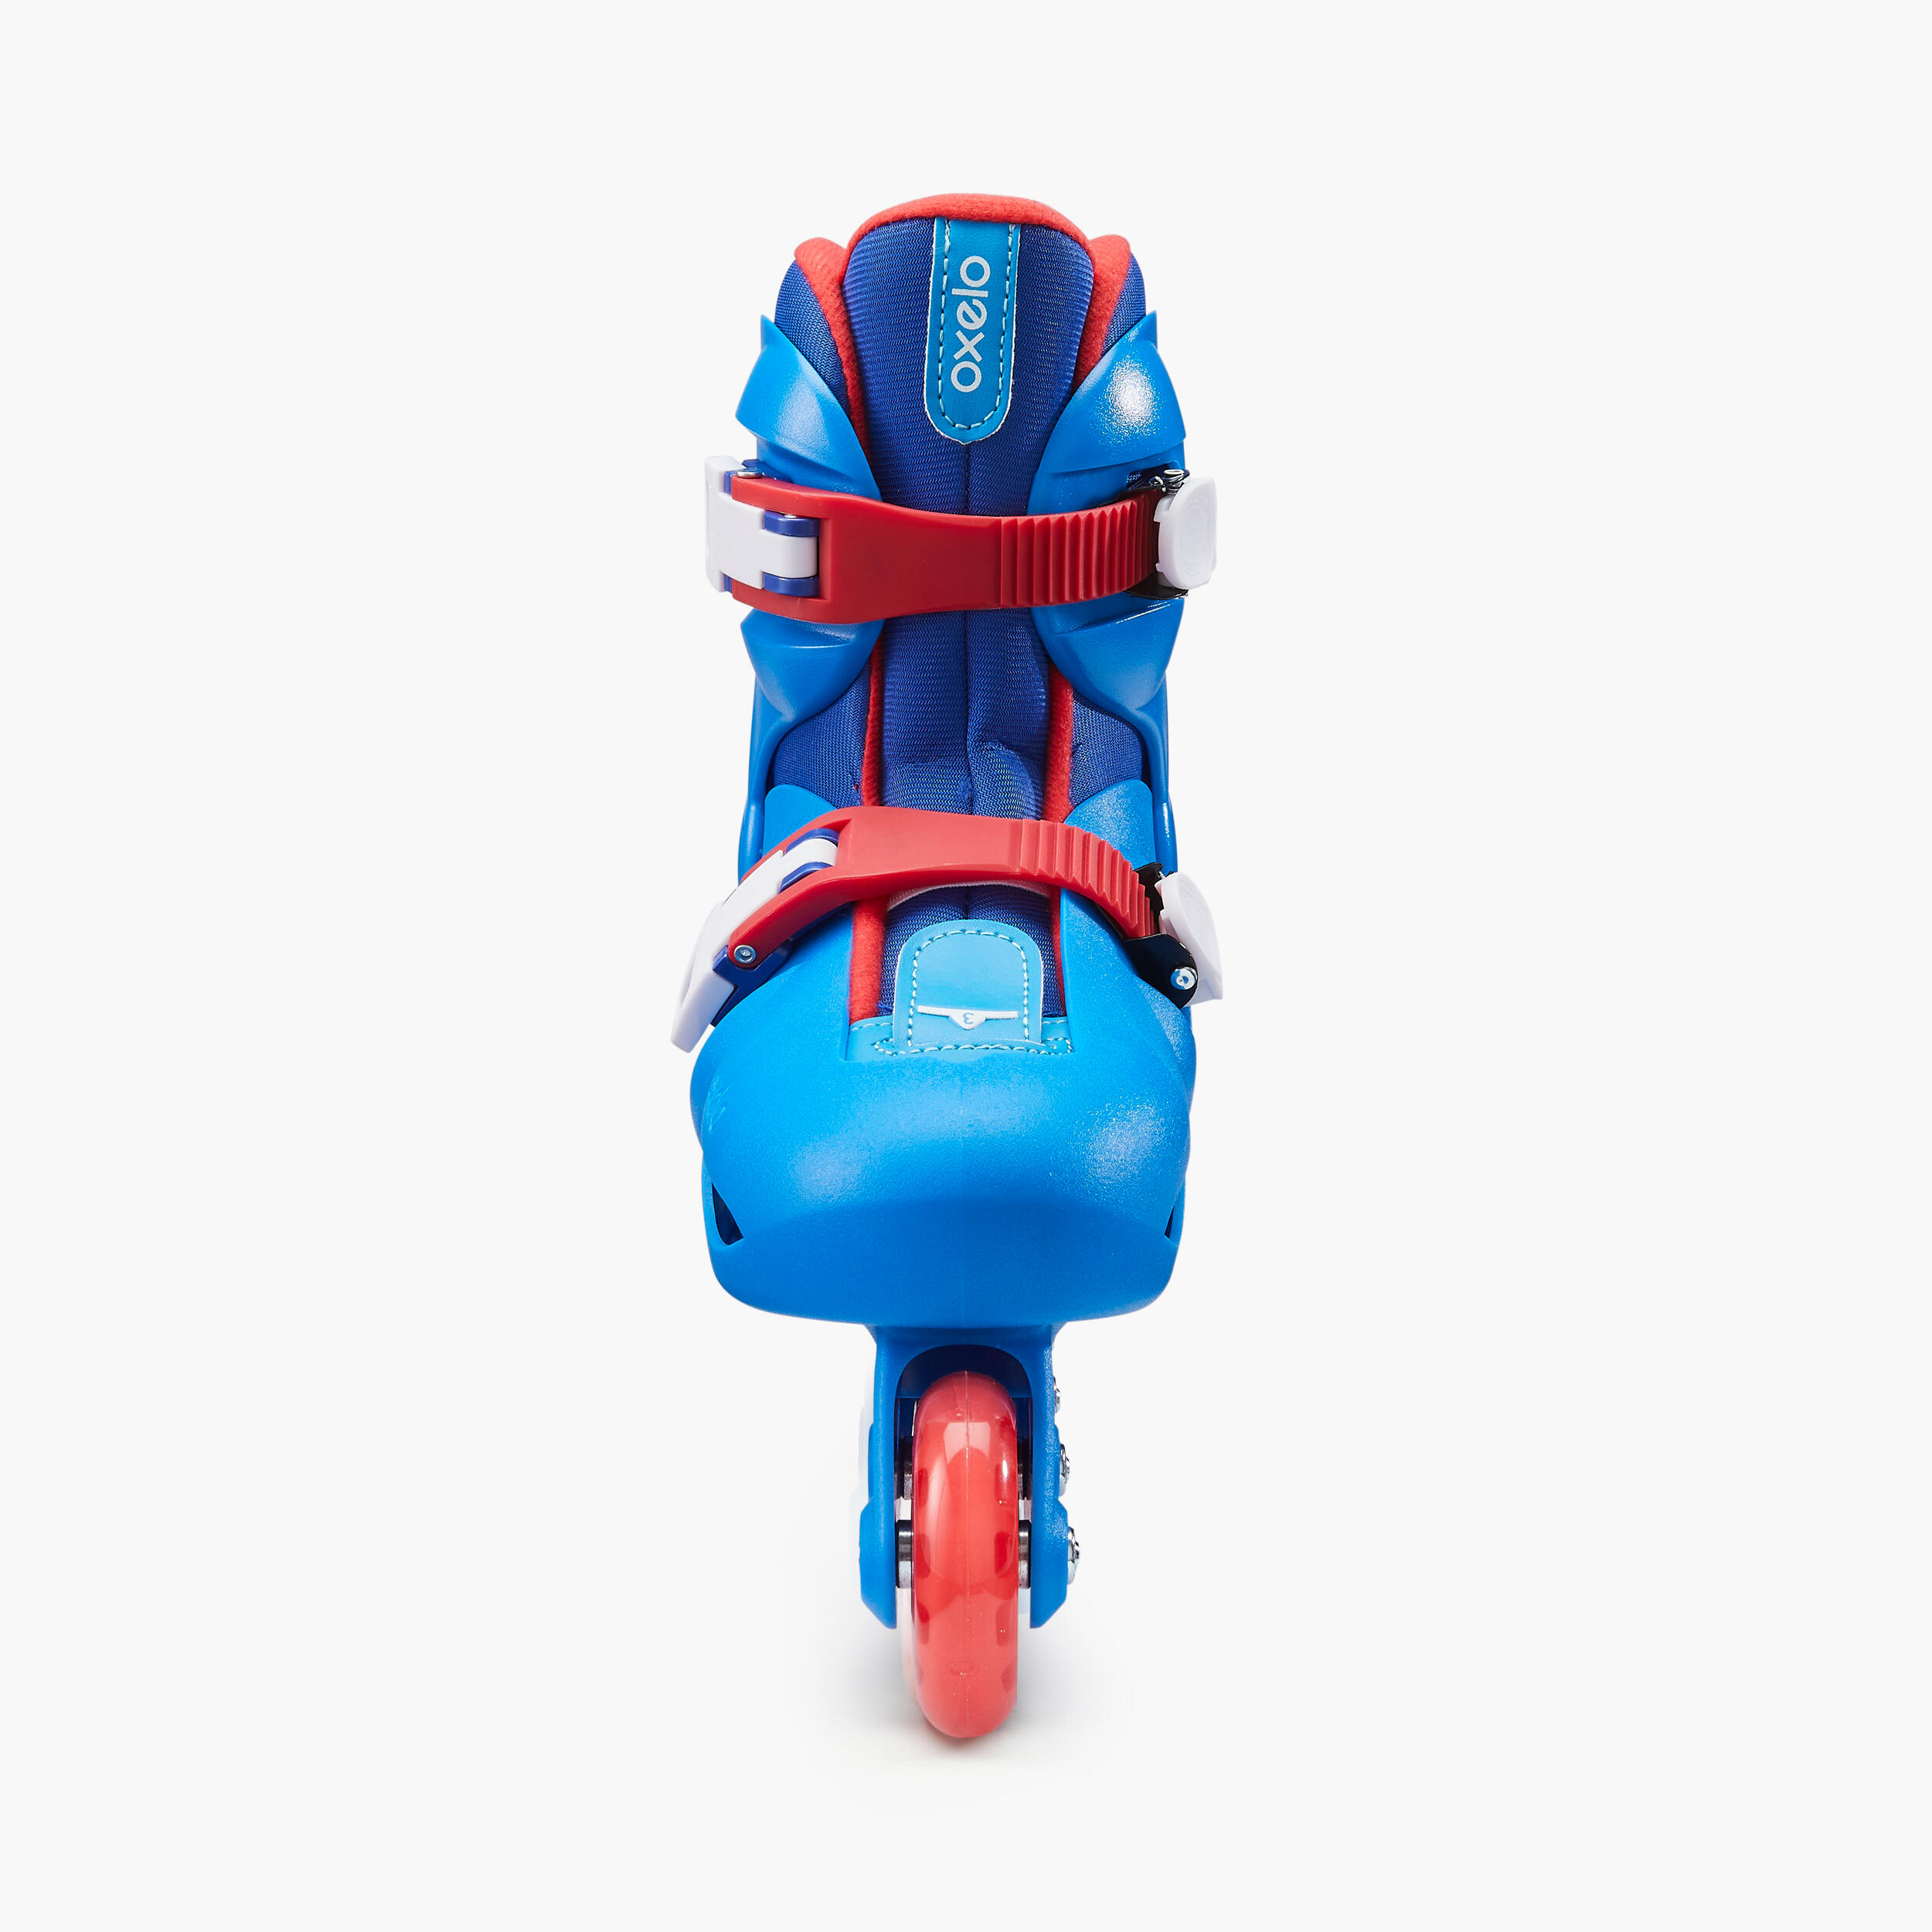 Patins à roues alignées enfant - Play 3 bleu/rouge - OXELO